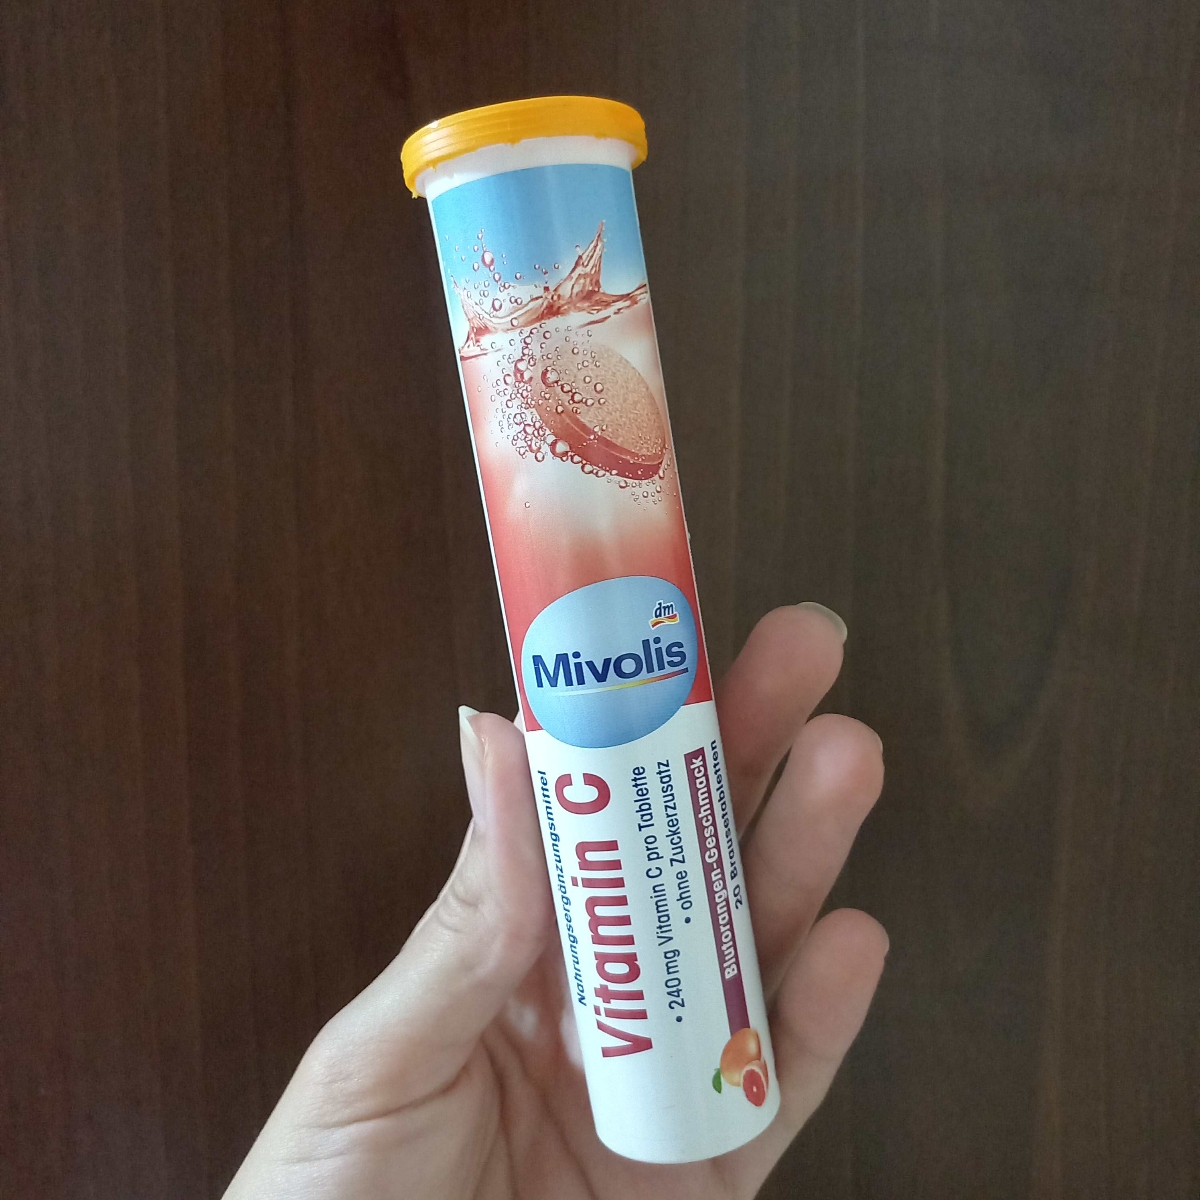 Mivolis Vitamin C Review | abillion